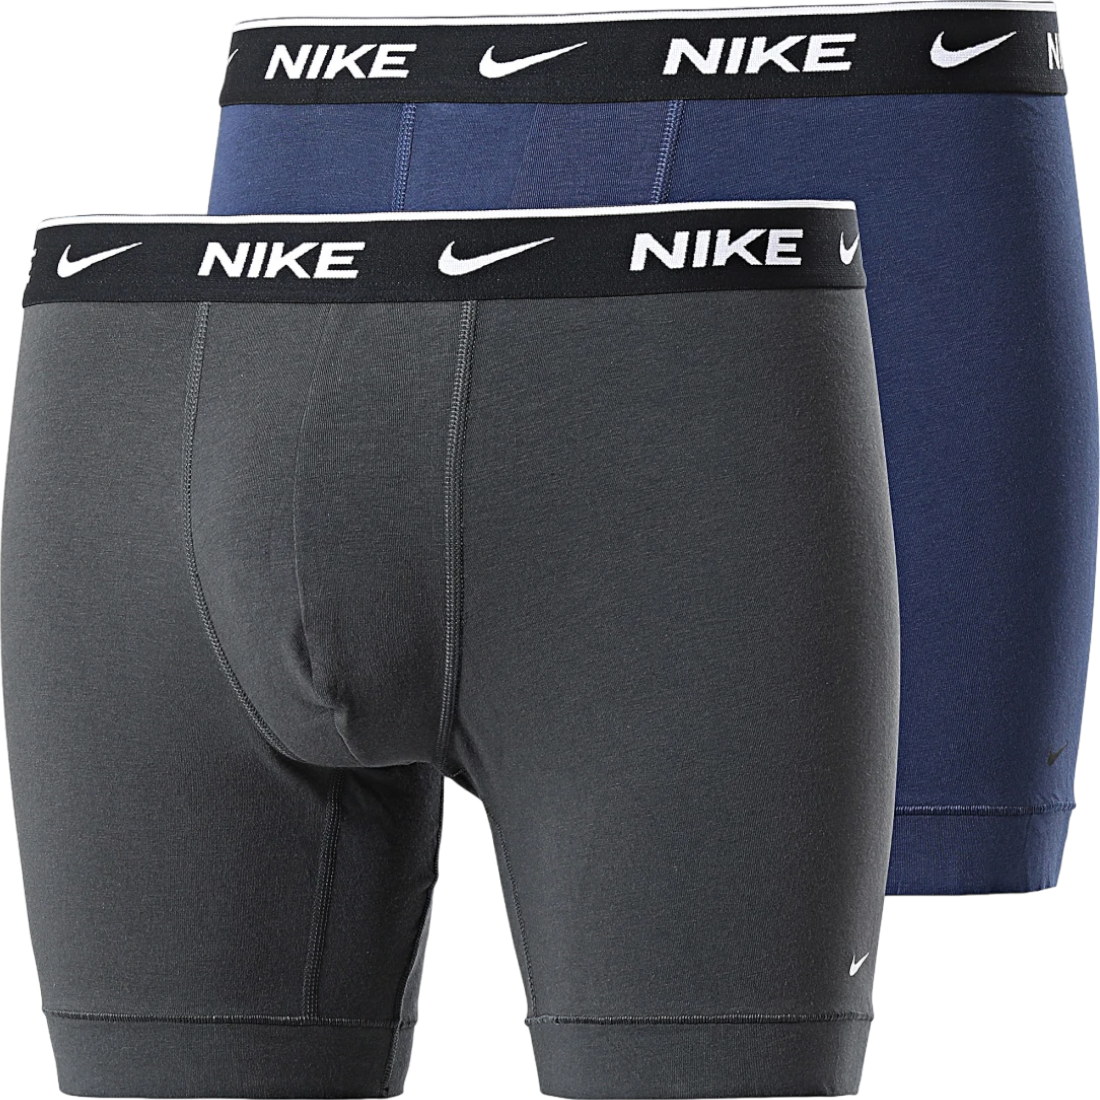 Bokserit Nike Sportswear 2 pcs